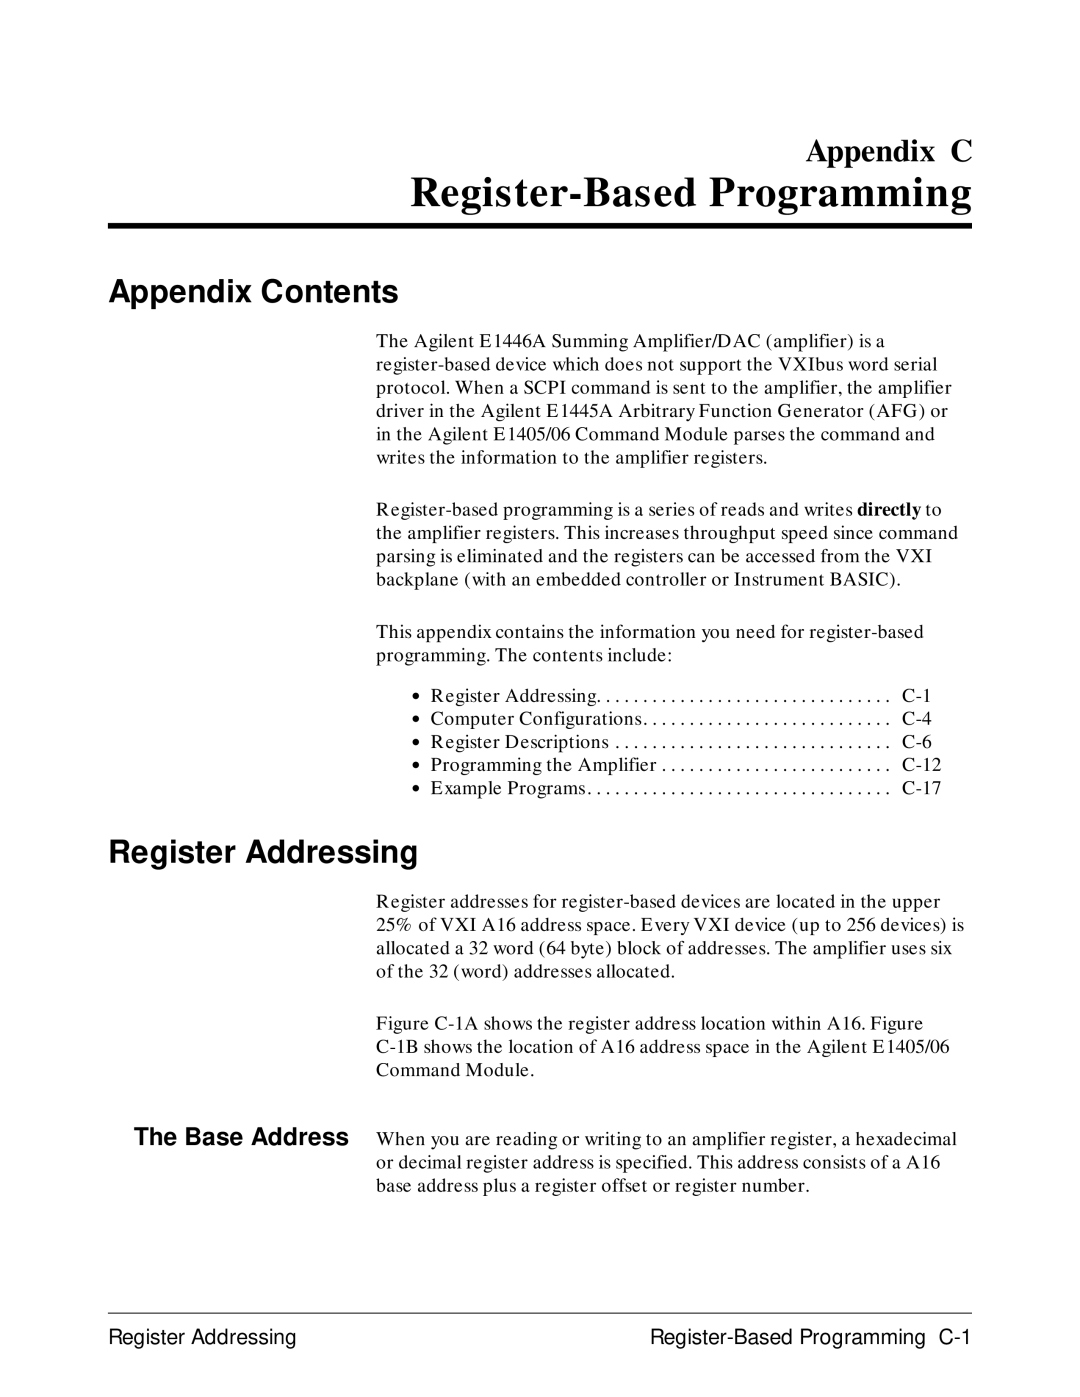 Agilent Technologies E1446A user manual Register Addressing Register-Based Programming C-1 